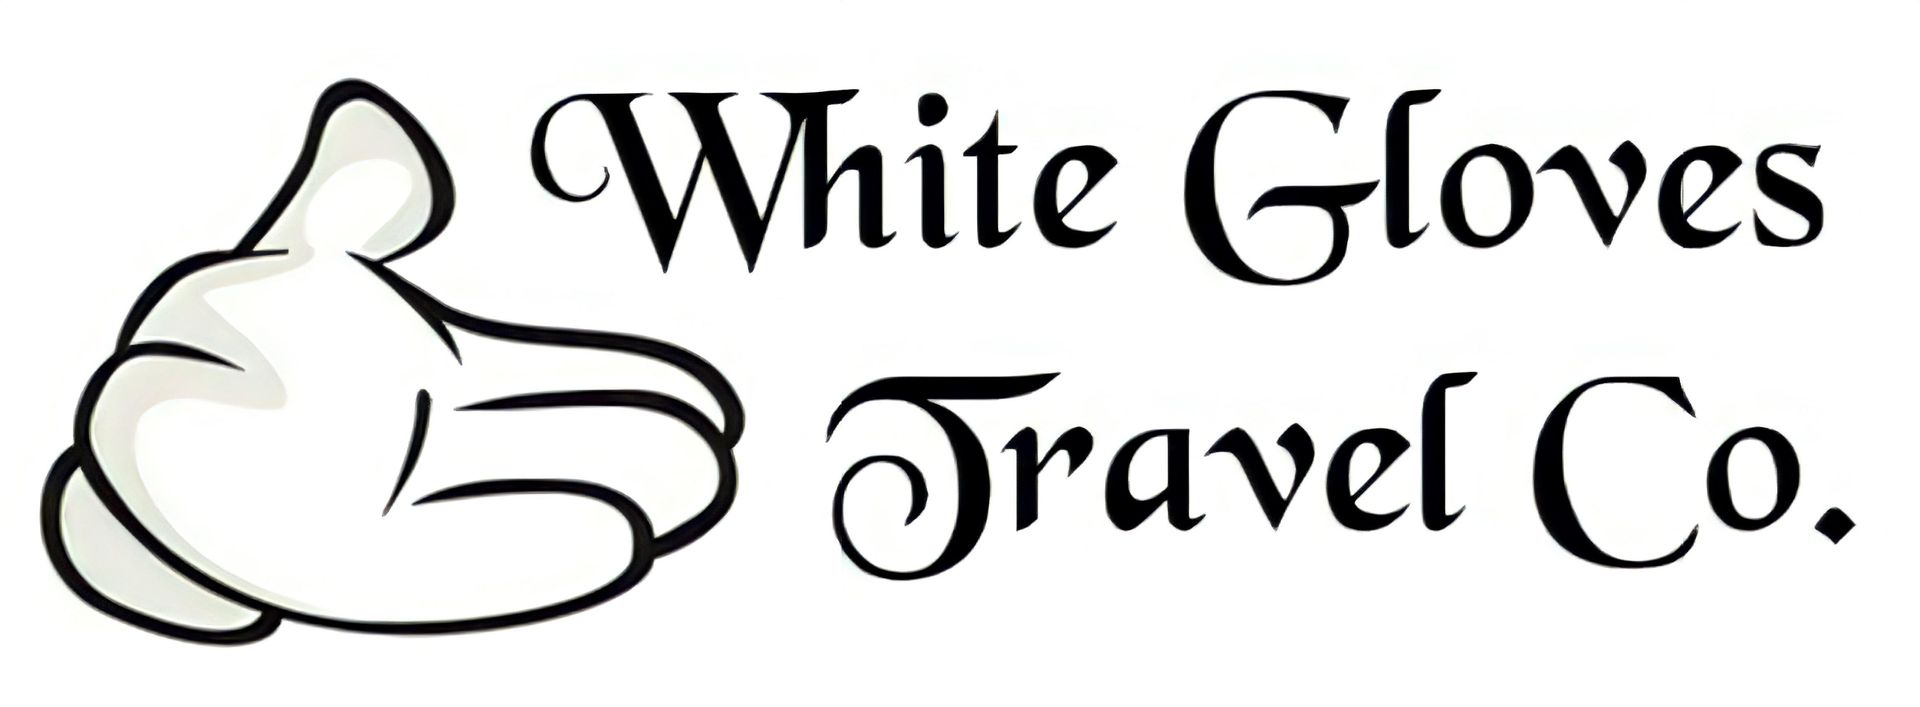 White Gloves Travel Co